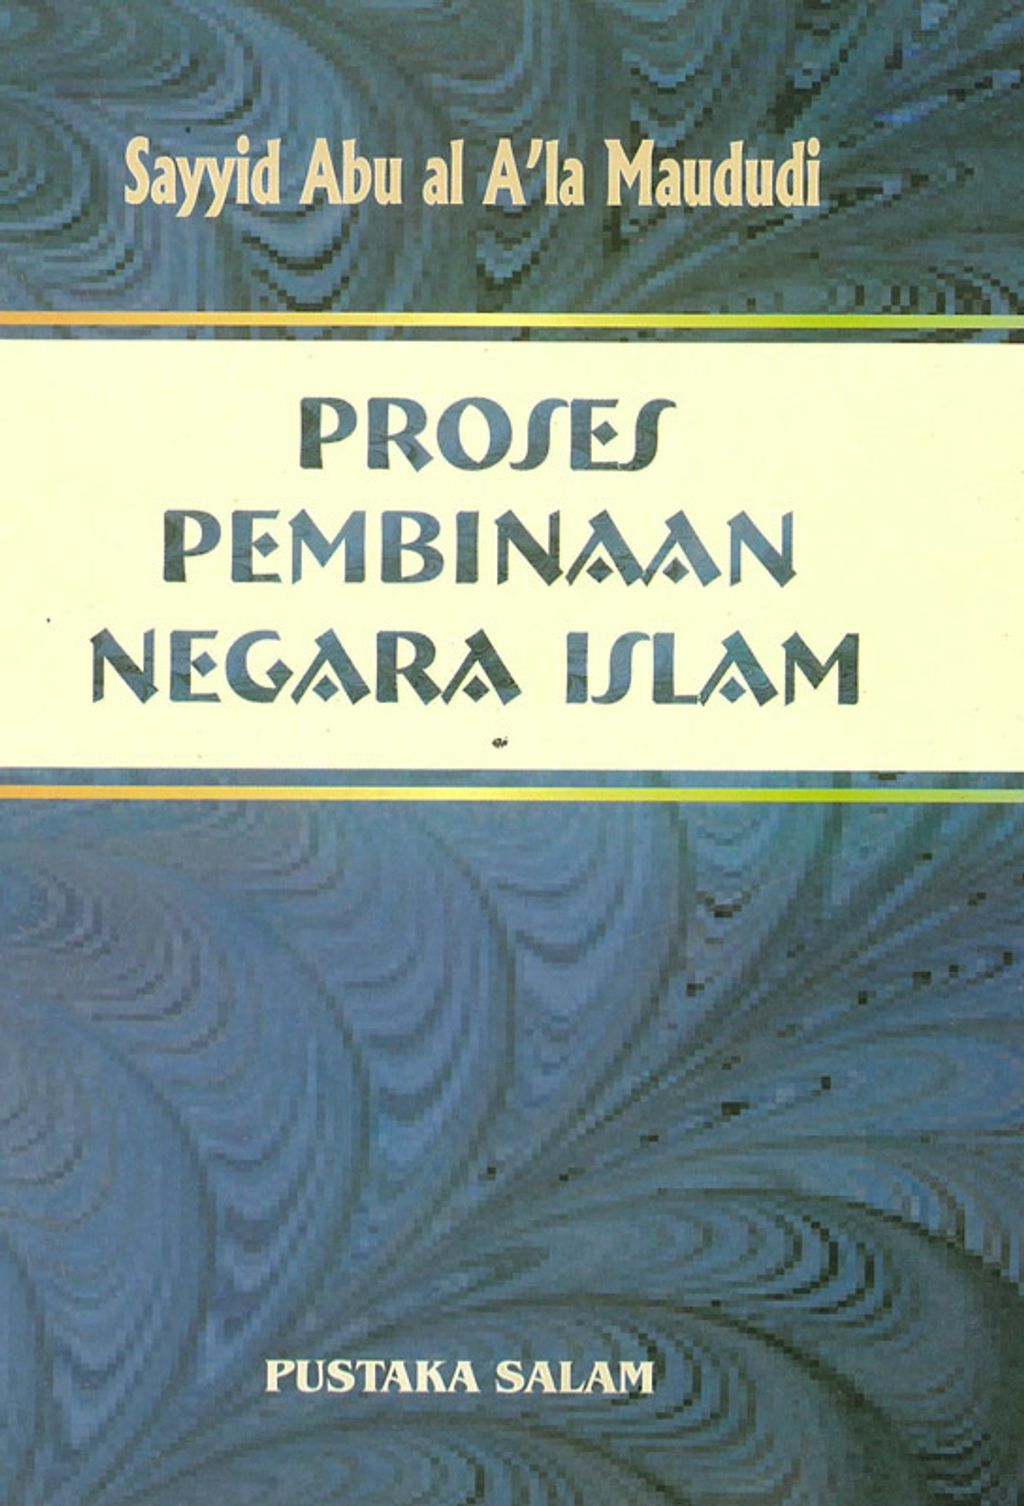 PROSES-PEMBINAAN-NEGARA-ISLAM 450.jpg